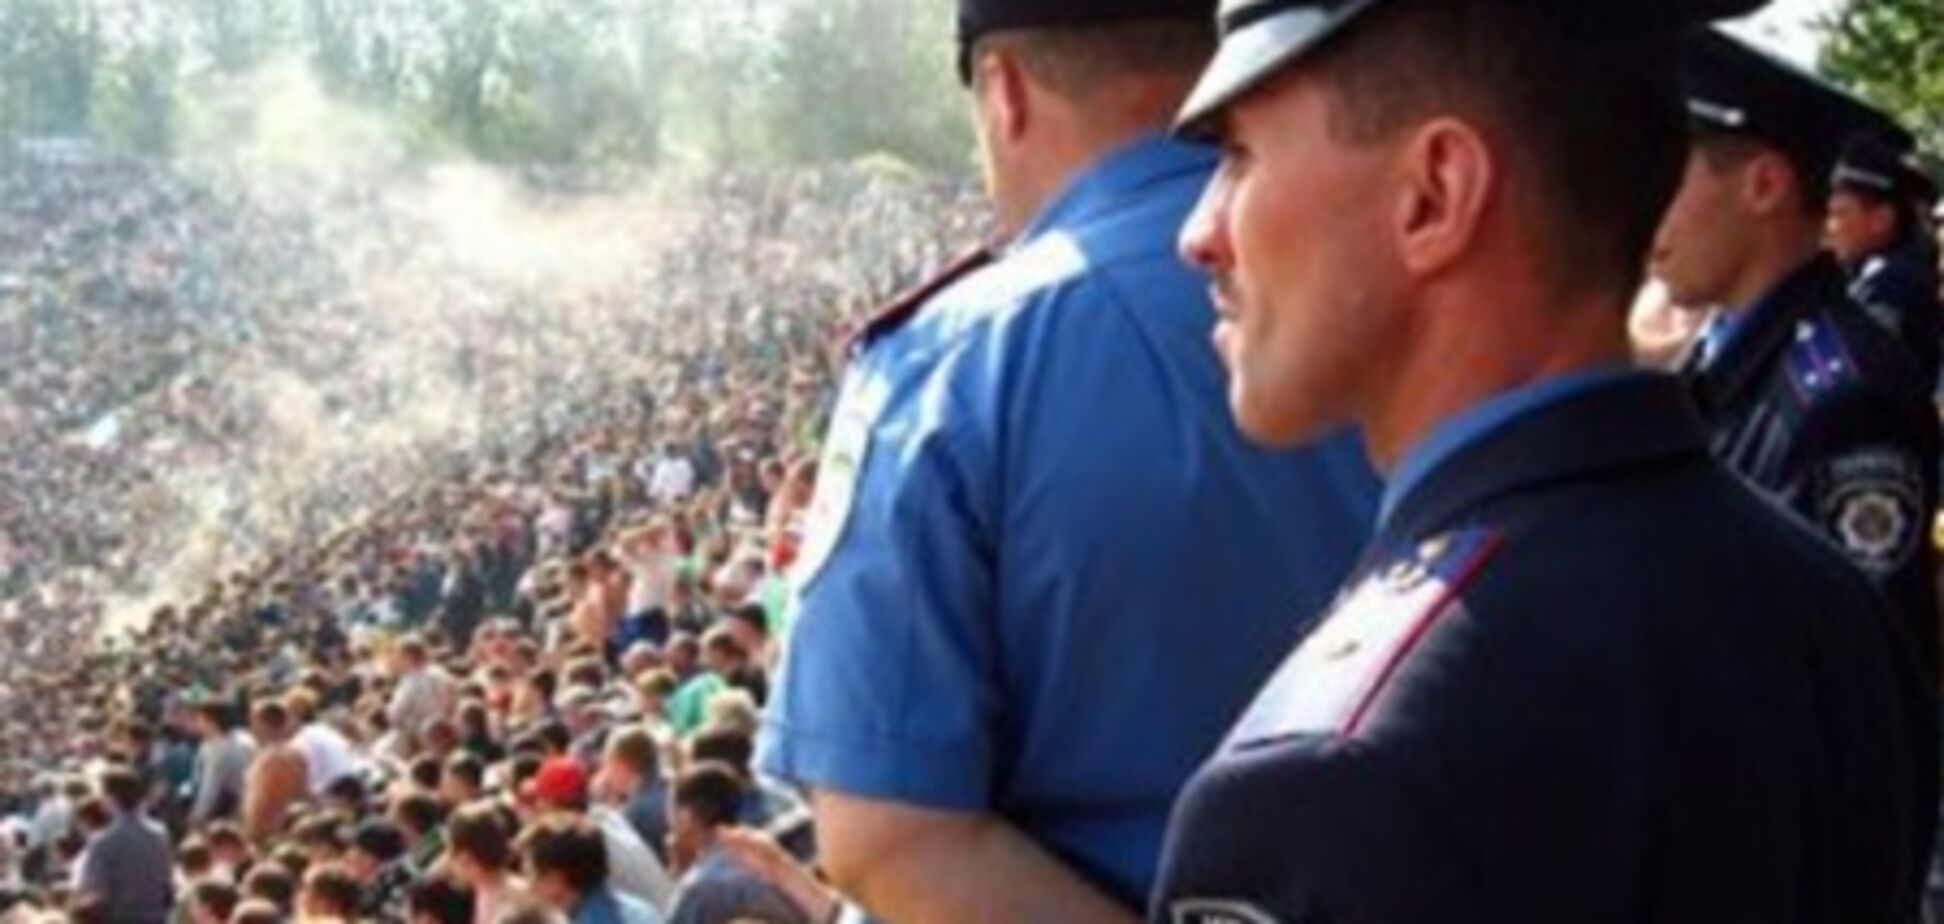 На майские в Украине будут дежурить 100 тыс. милиционеров